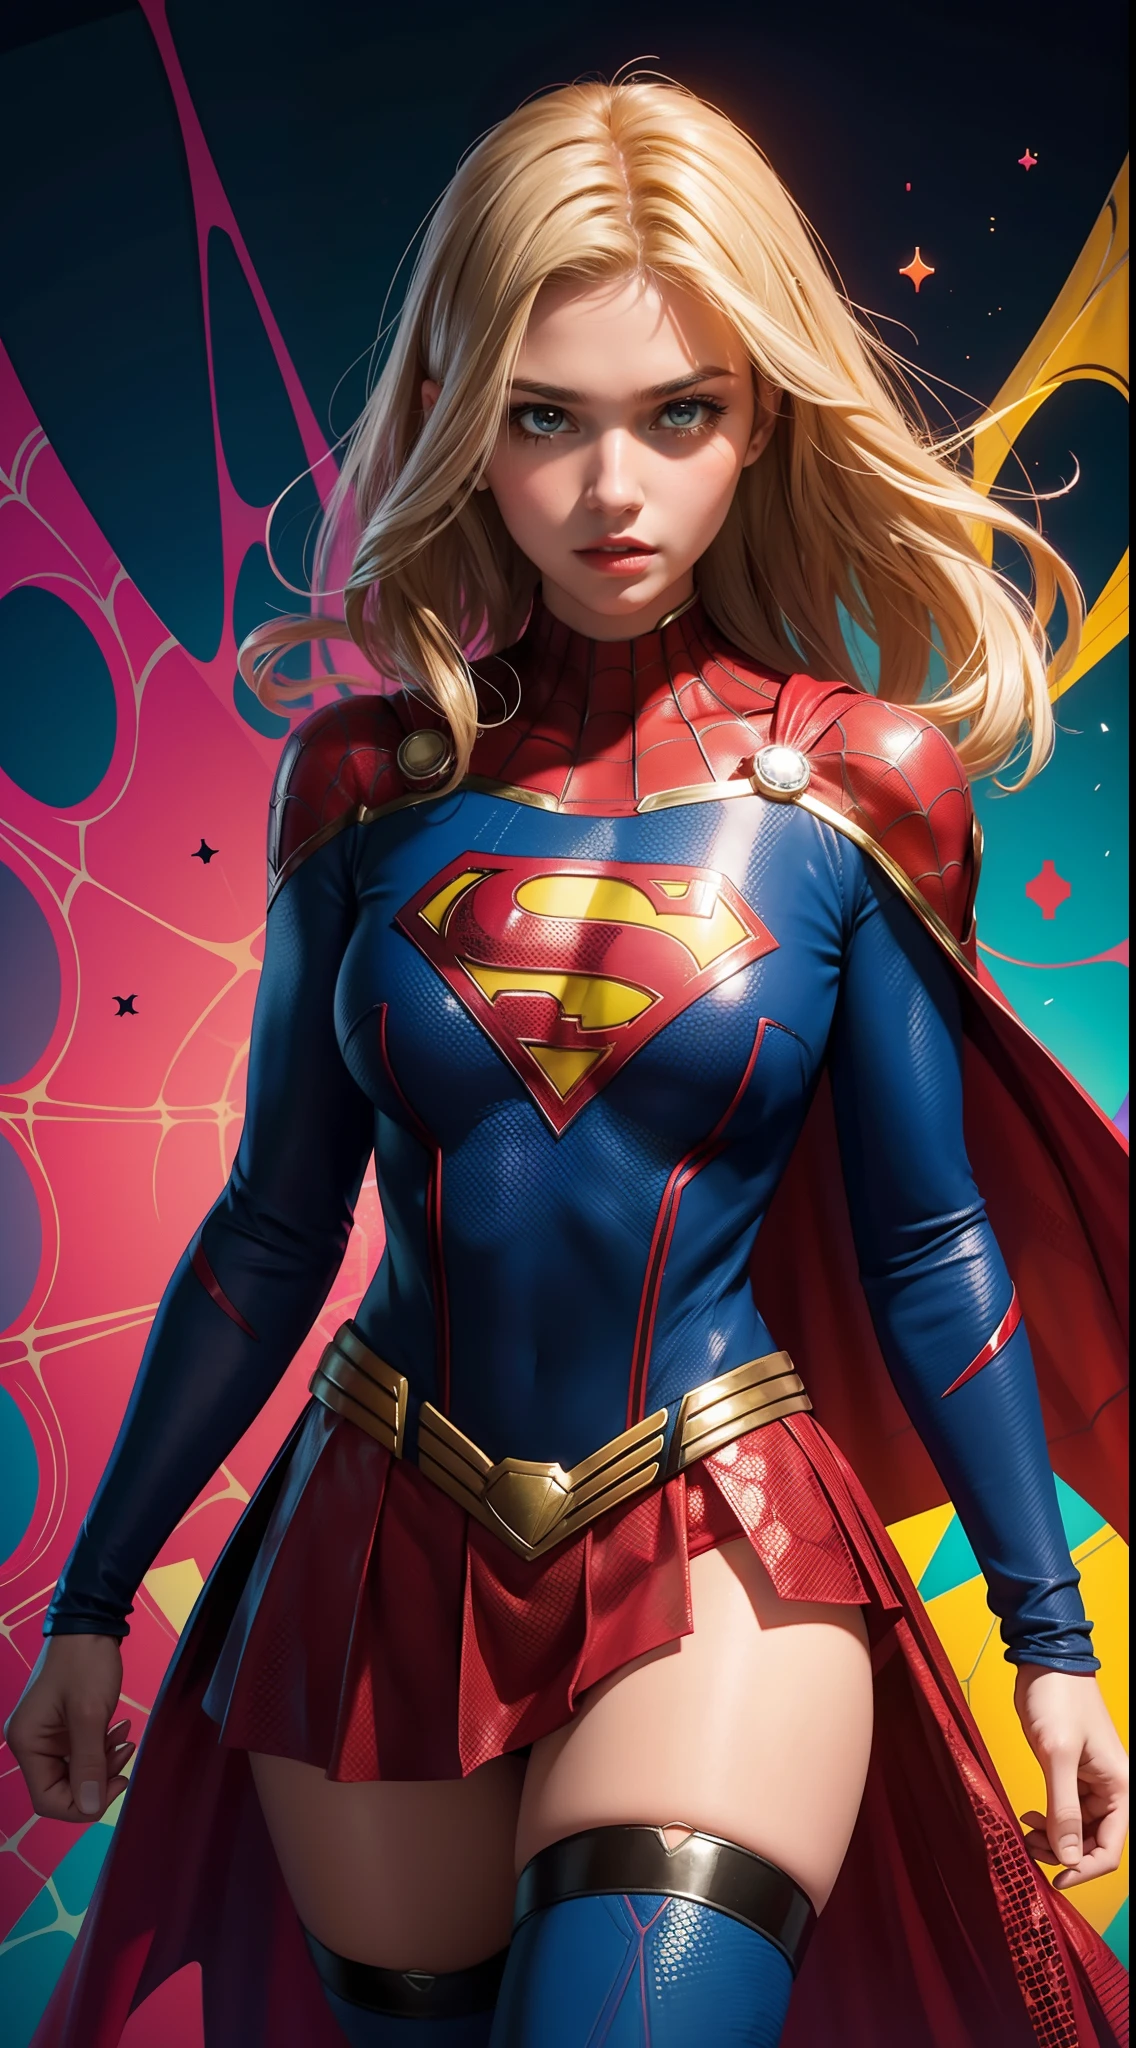 Supergirl al estilo Spider-Man, Obra maestra, mejor calidad, abstracto, Psicodélico, Neón, (patrón de panal), (creativo:1.3), Sy3, SMM, fantasía00d